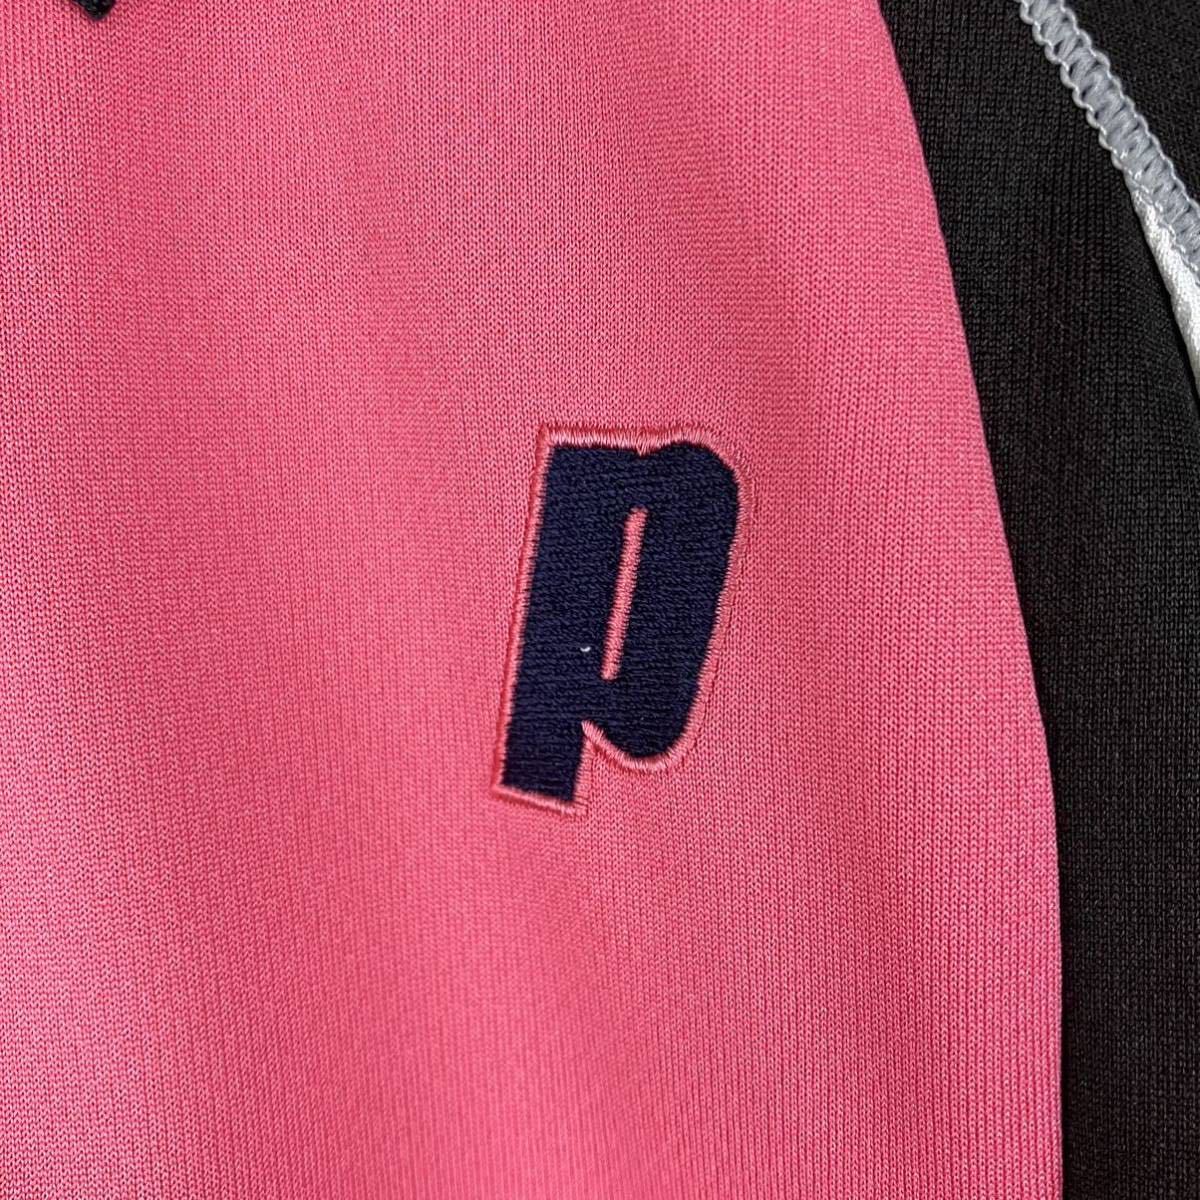 大きいサイズ prince プリンス 半袖 ポロシャツ レディース L ピンク 黒 白 カジュアル スポーツ golfゴルフ テニス ウェア シンプル_画像4